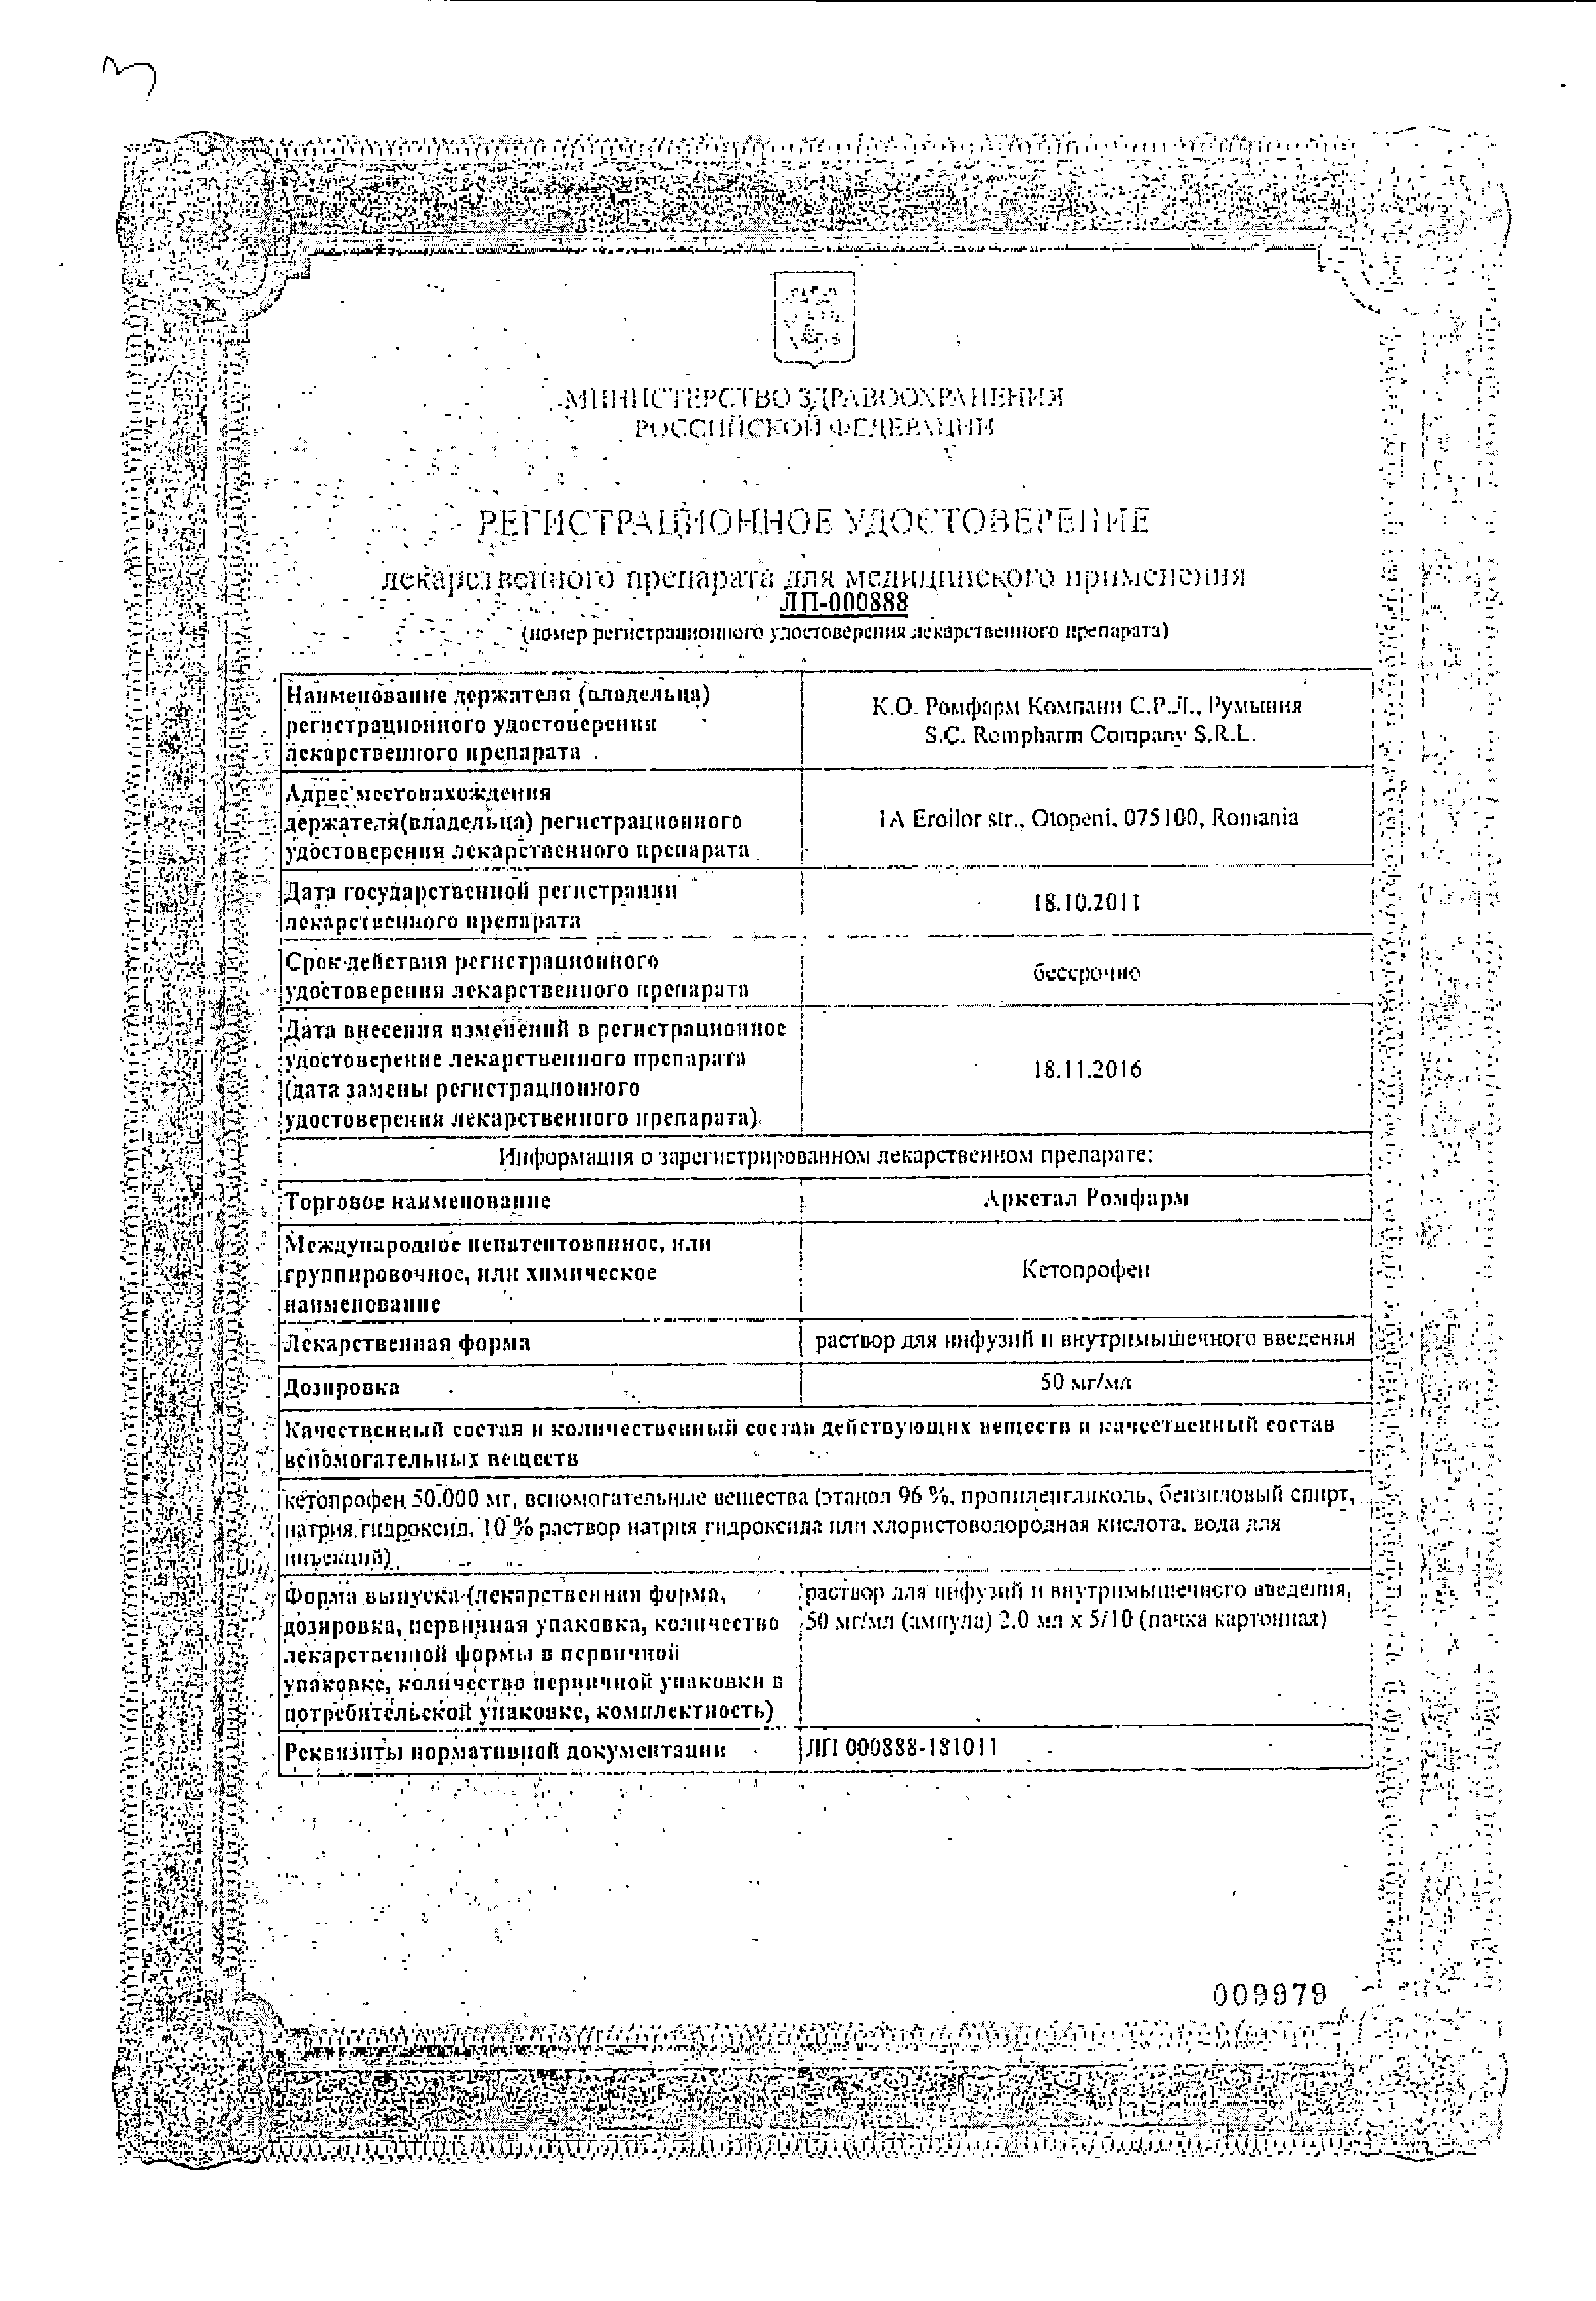 Аркетал Ромфарм сертификат